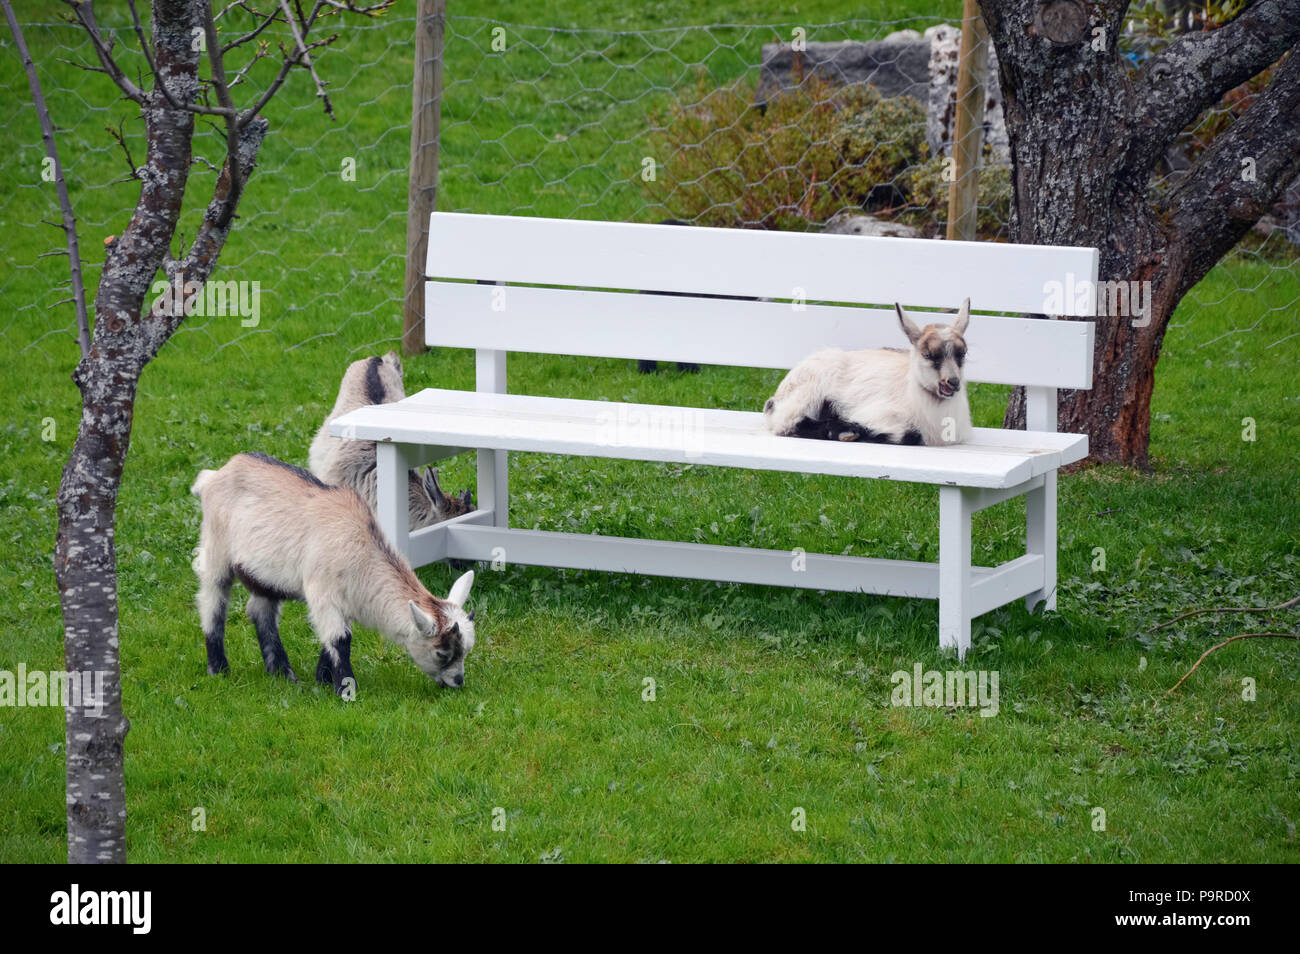 Banco y ovejas en un pasto verde - flam noruega Foto de stock